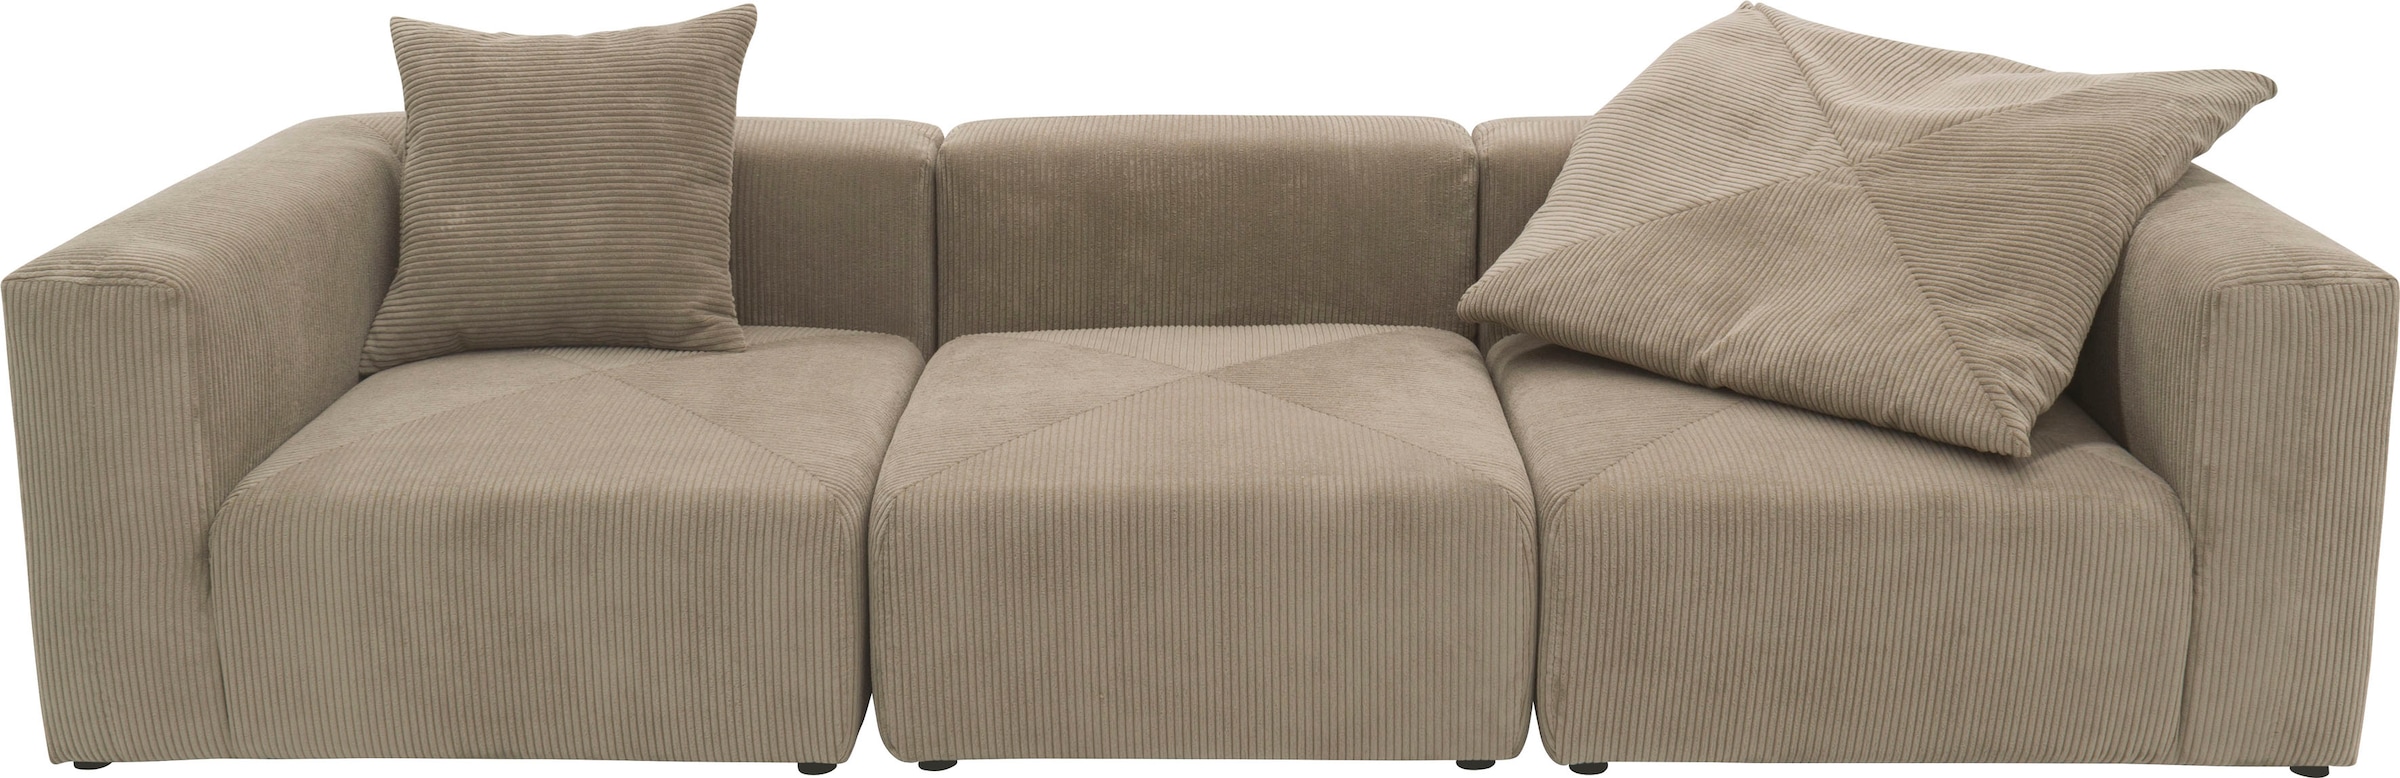 RAUM.ID Big-Sofa »Gerrid«, Cord-Bezug, bestehend aus Modulen: 2 Eck- und ein Mittelelement